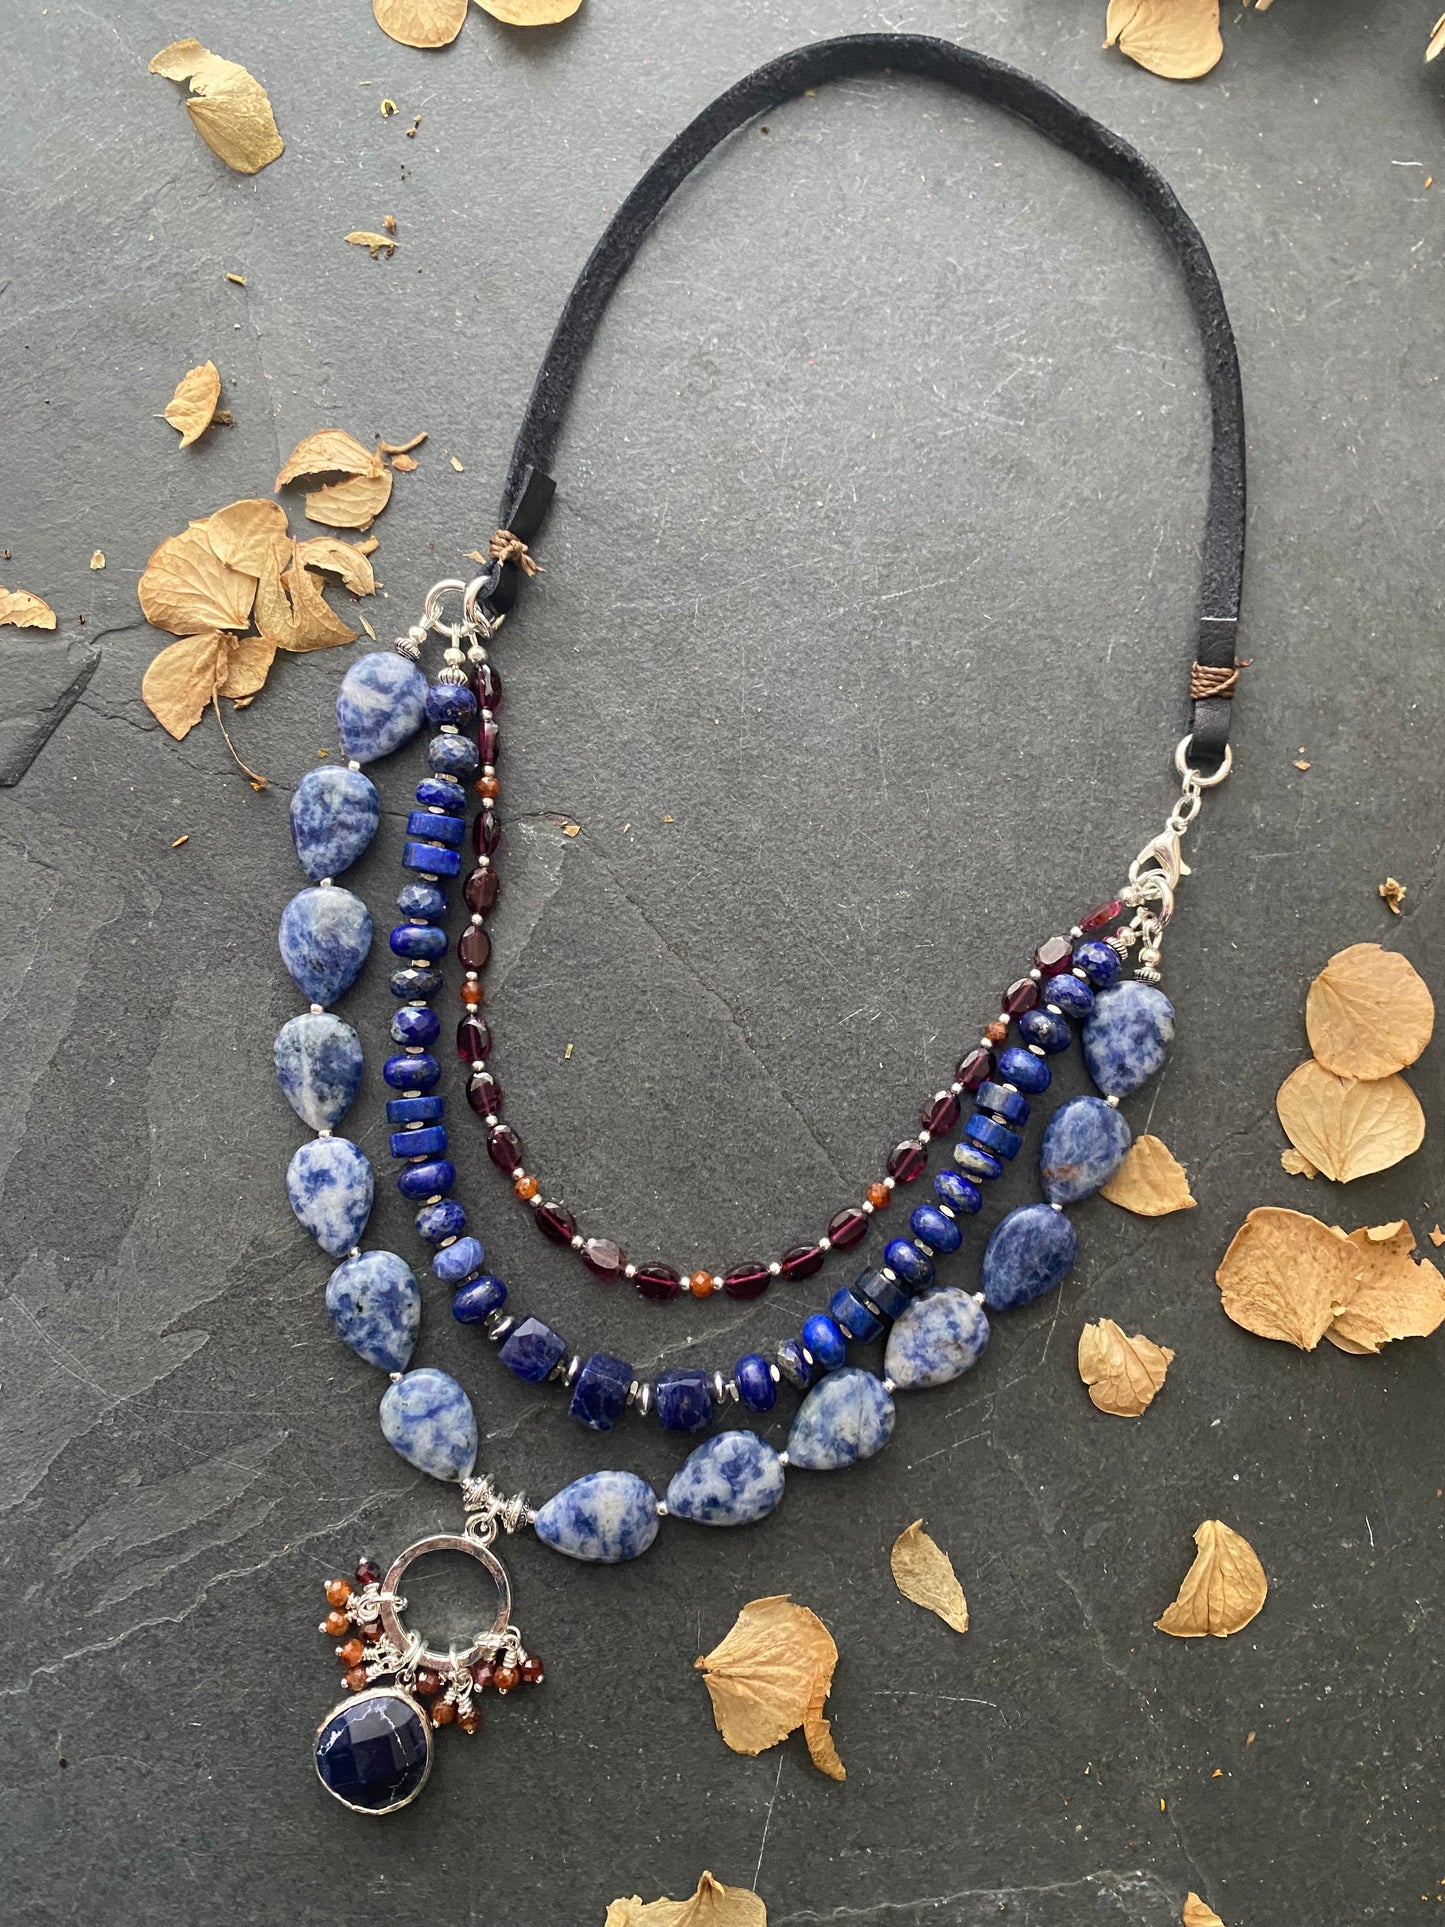 Lapis lazuli stone, sodalite stone, garnet stone, necklace, silver metal, necklace, jewelry